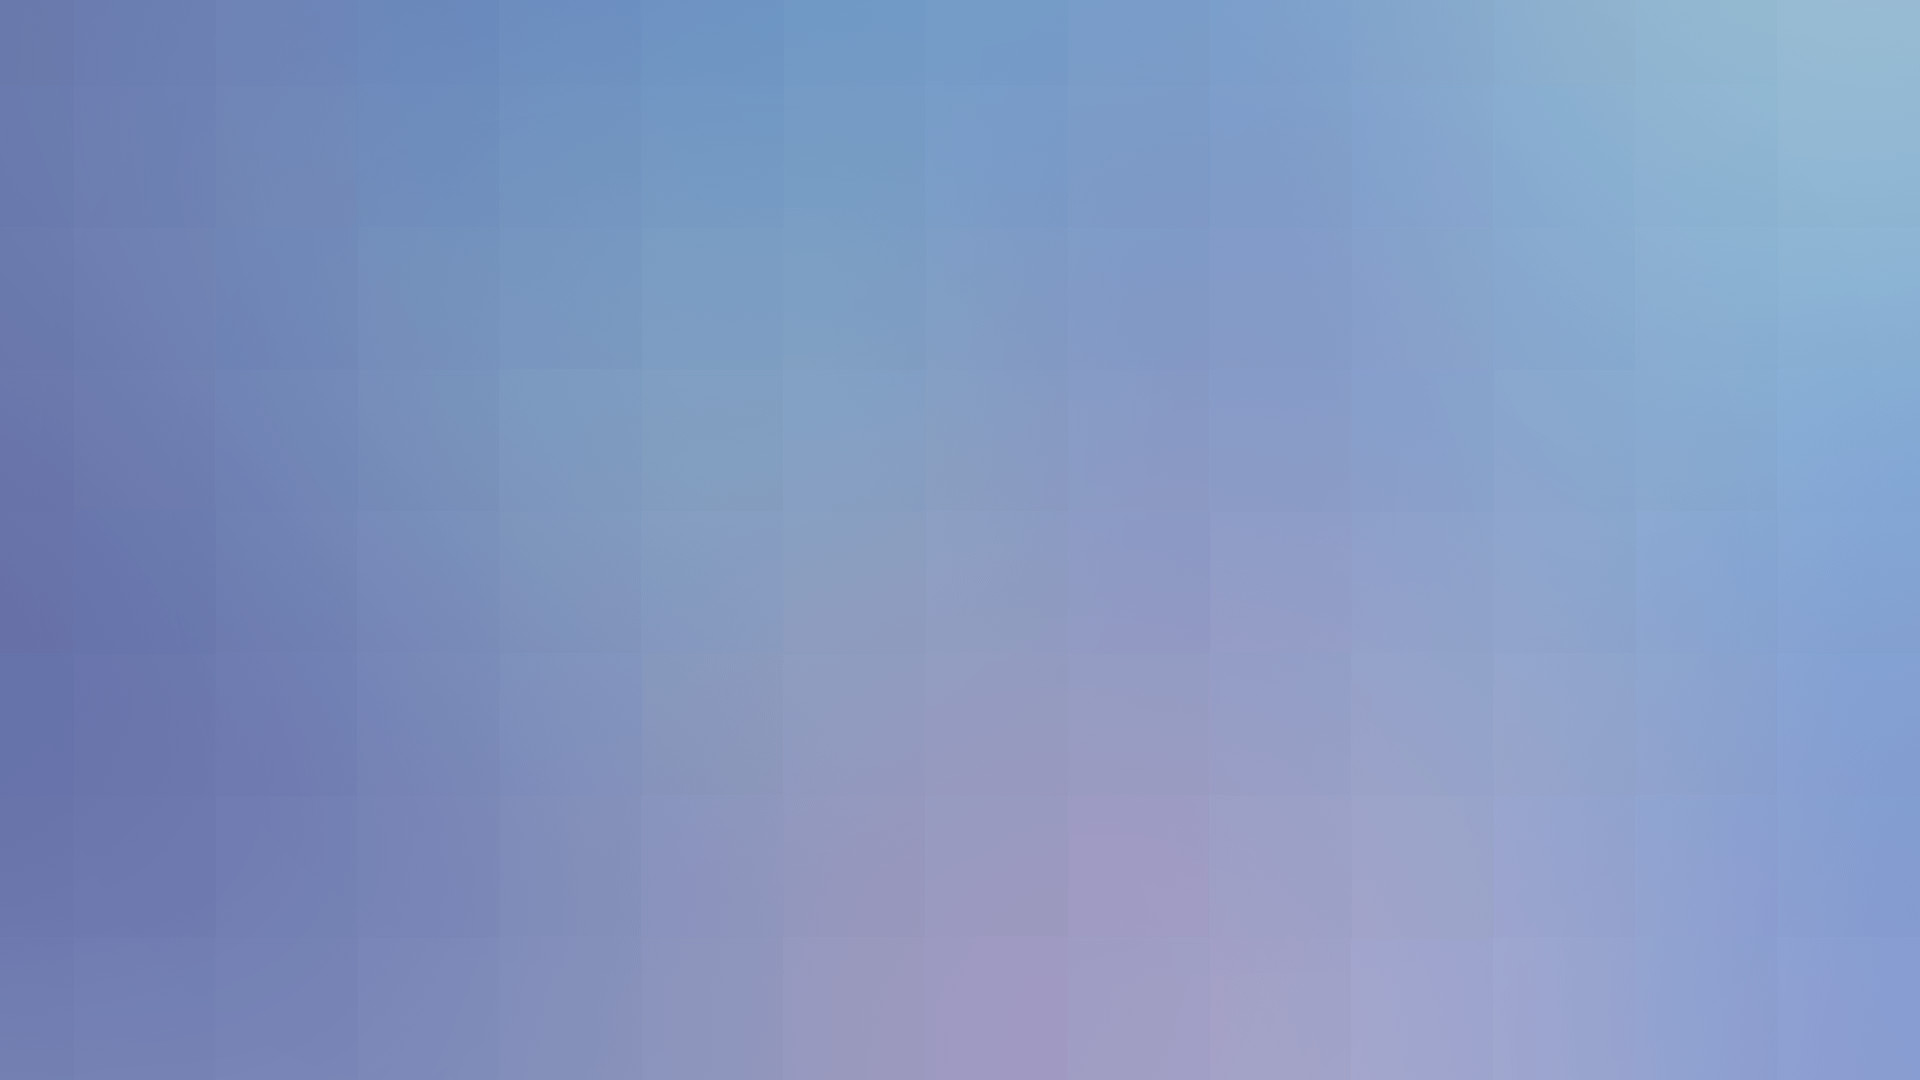 General 1920x1080 blurred gradient pattern minimalism